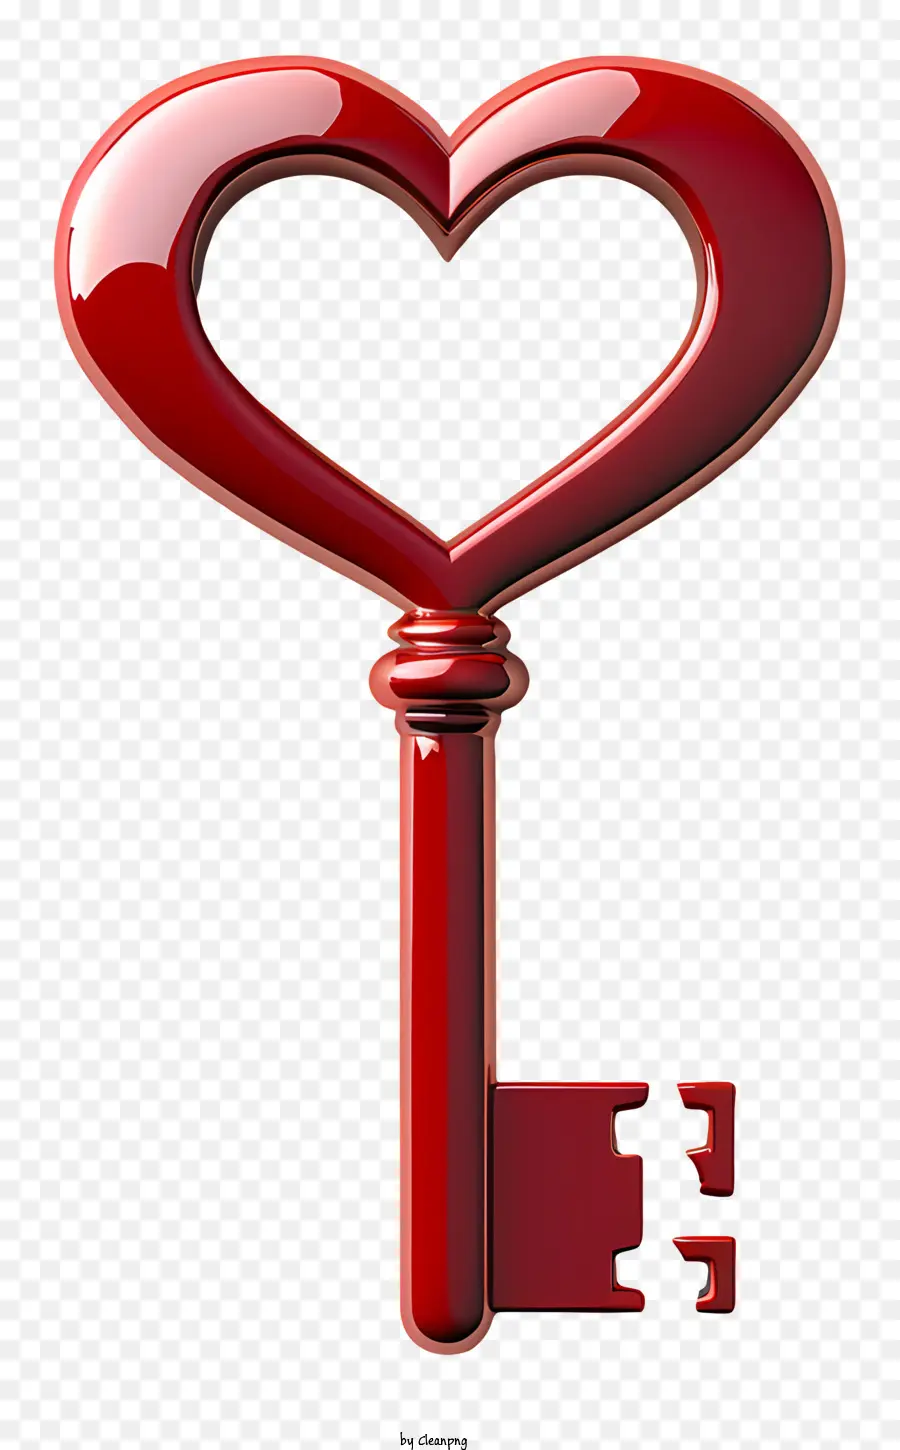 Chiave a forma di cuore di San Valentino Chiave di plastica rossa Chiave Silver Shiny Shiny - Chiave a forma di cuore lucida con buco della serratura nascosta